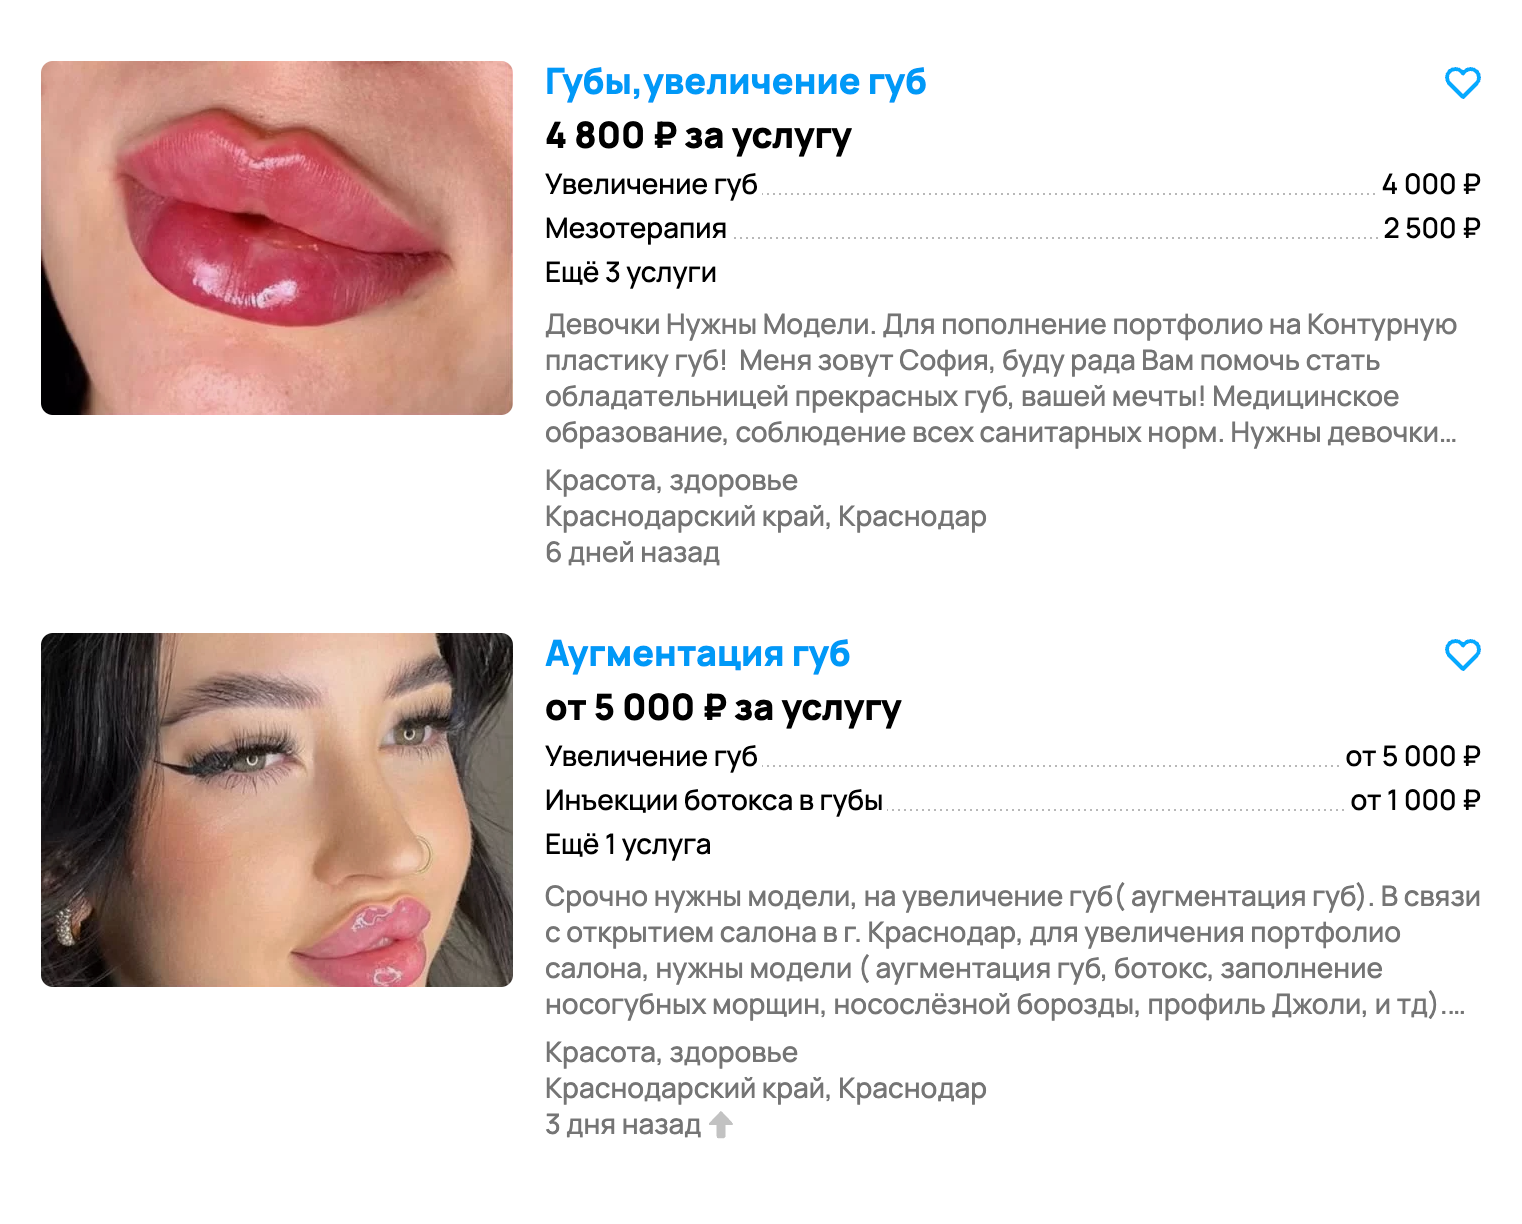 На сайтах с объявлениями сотни предложений дешевого увеличения губ. Среди них мало объявлений от квалифицированных врачей. Источник: avito.ru